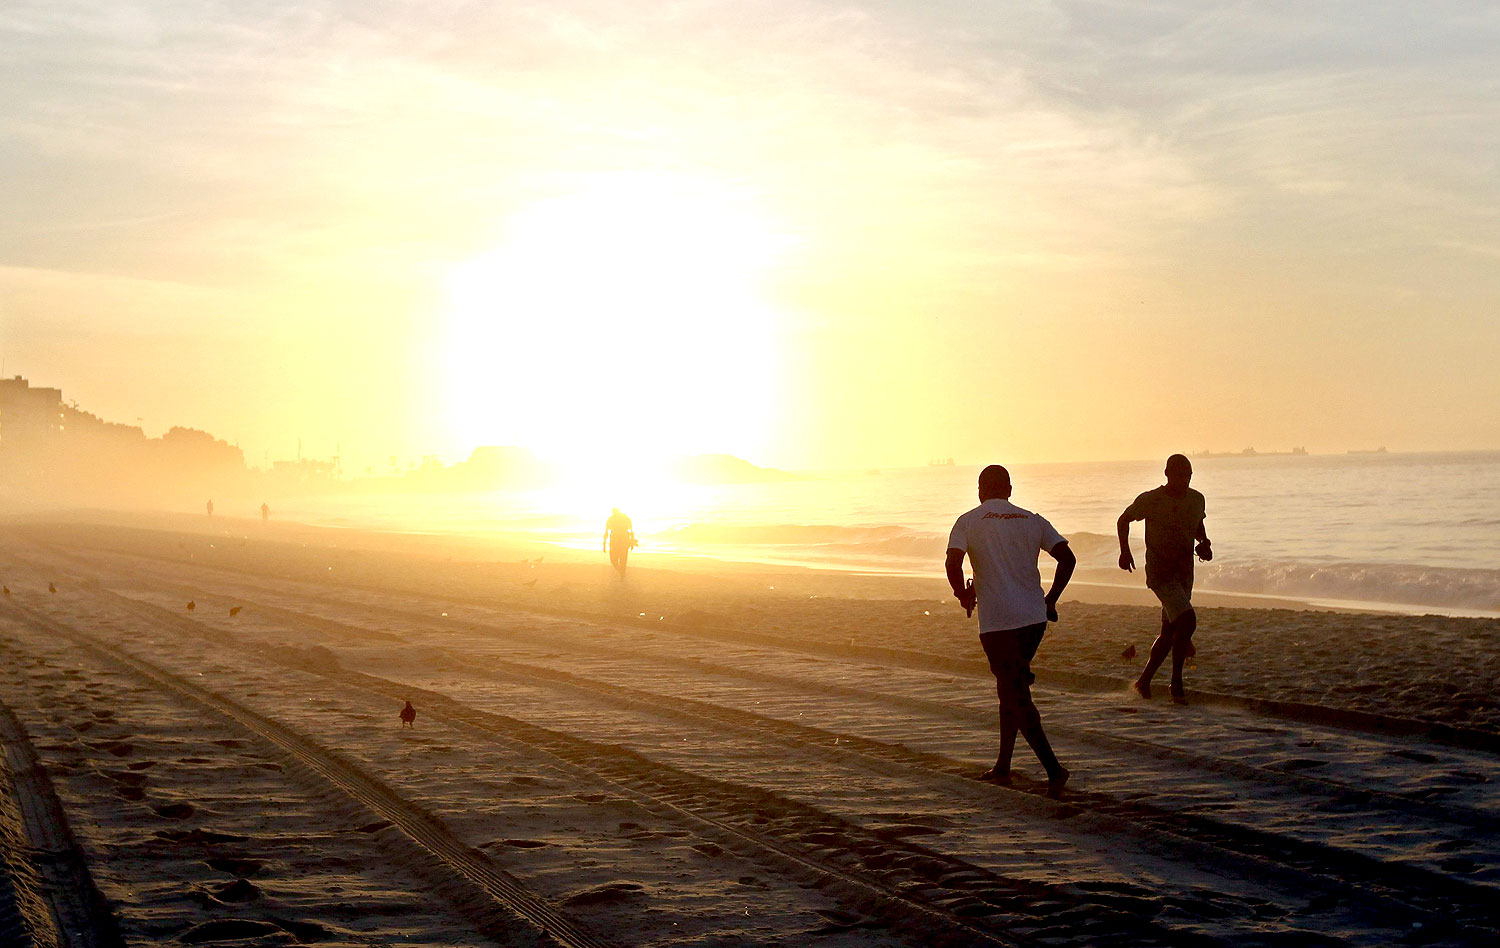 Correr na areia ajuda na preparação física, mas exige cuidados do ...